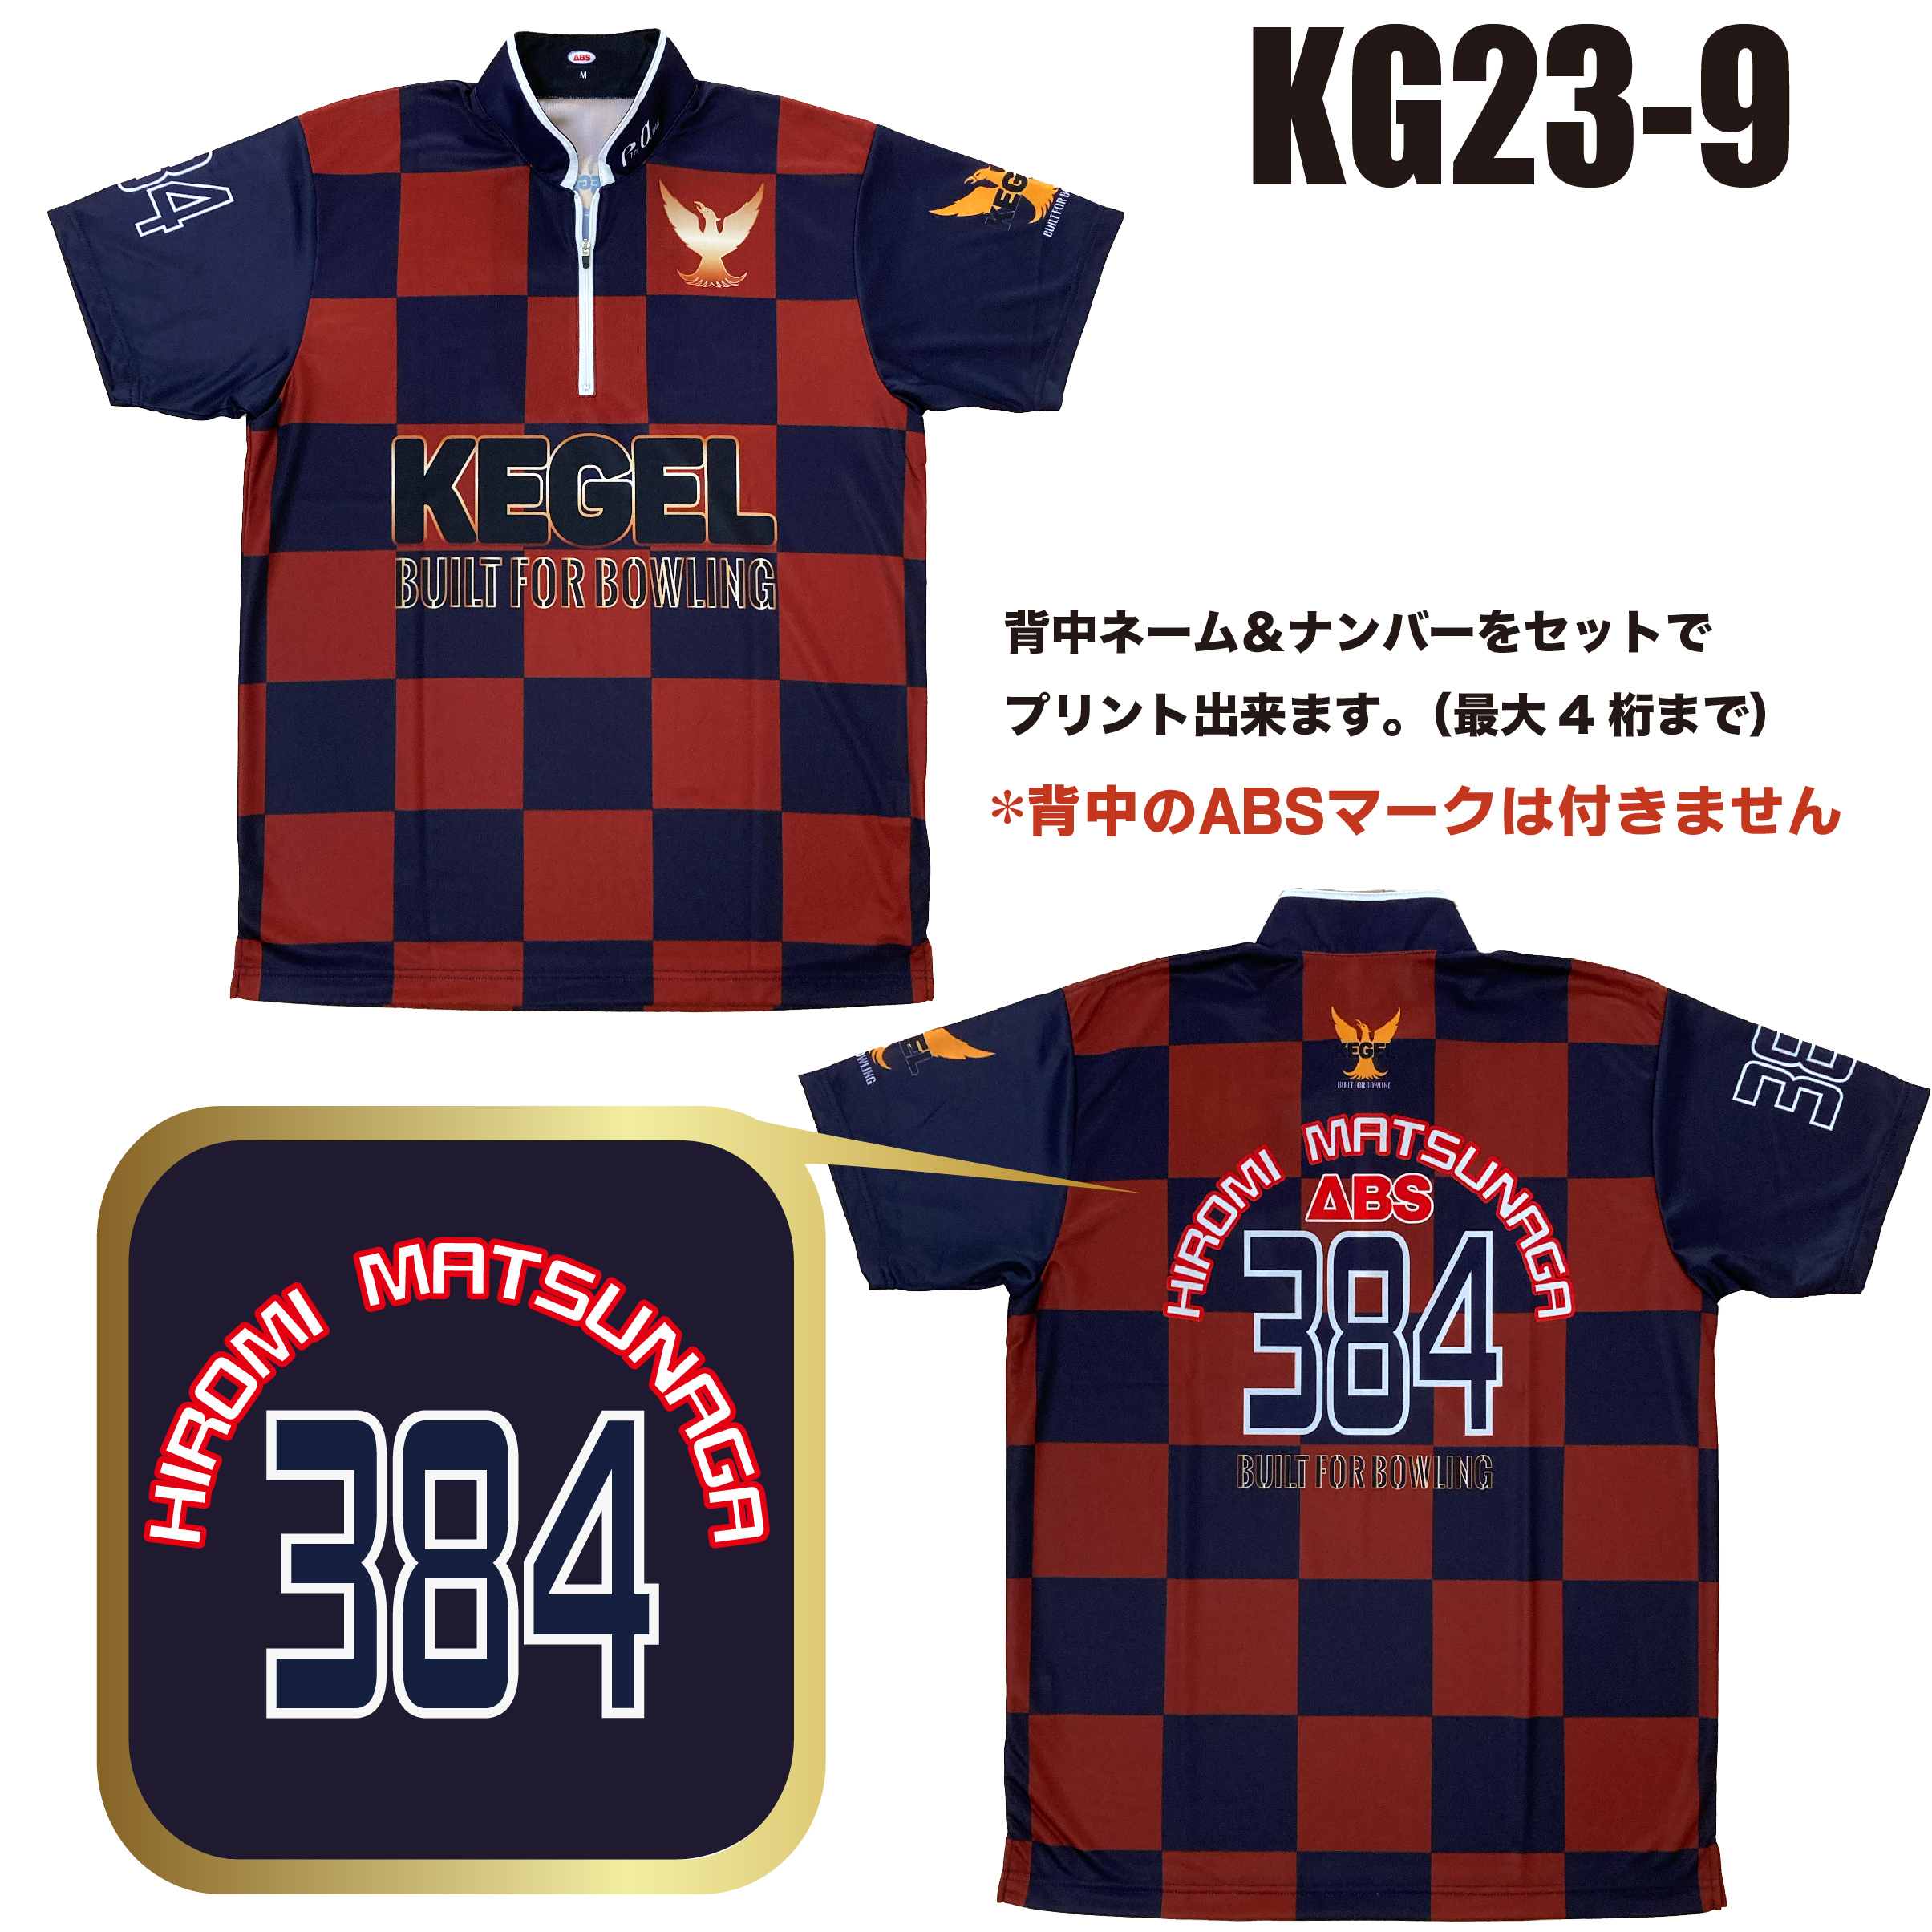 KEGEL KG23-9(受注生産)